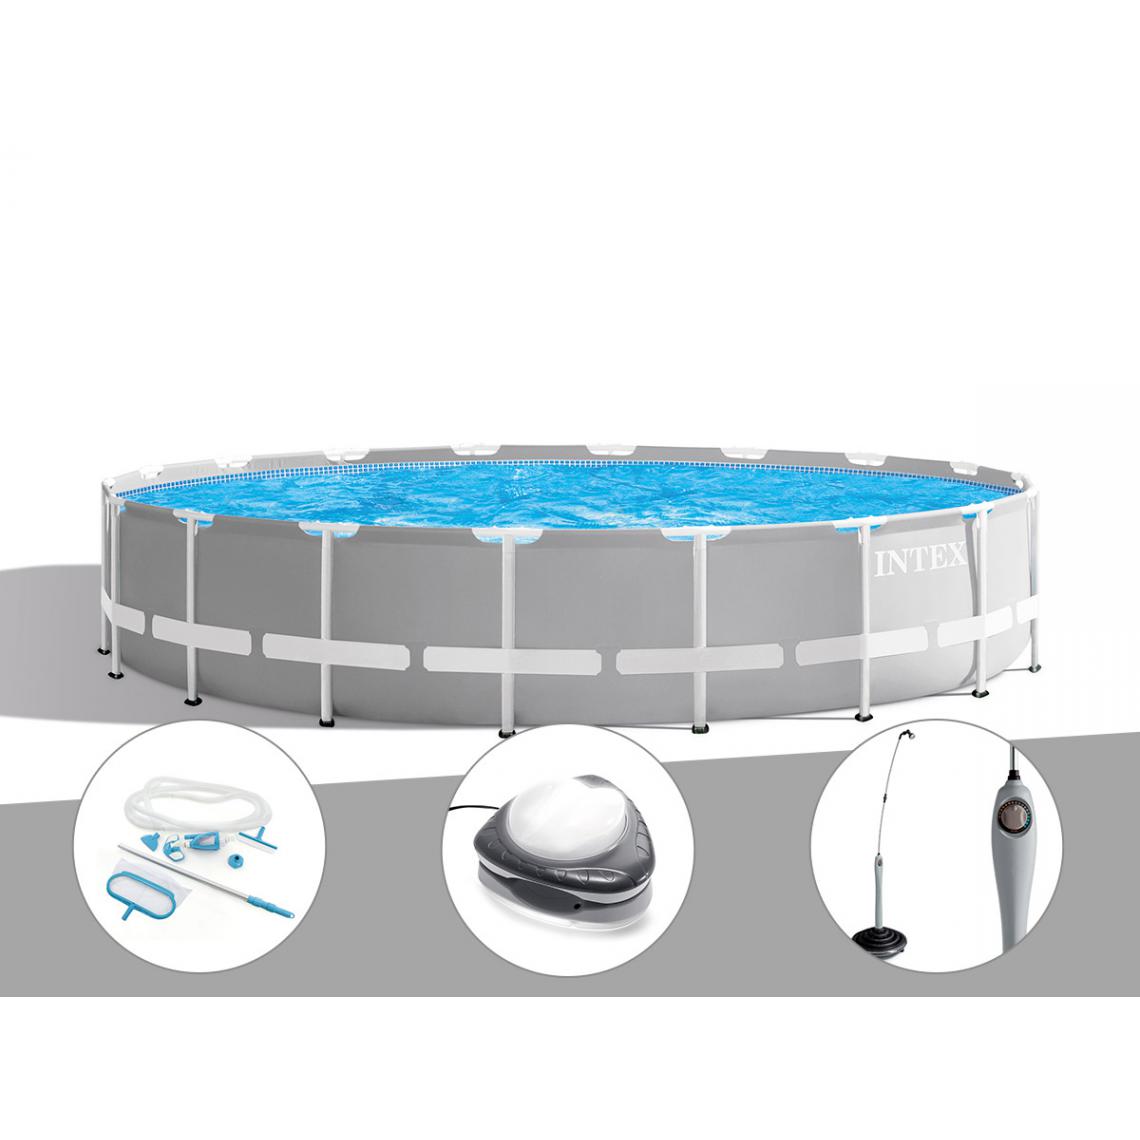 Intex - Kit piscine tubulaire Intex Prism Frame ronde 6,10 x 1,32 m + Kit d'entretien + Spot + Douche solaire - Piscine Tubulaire